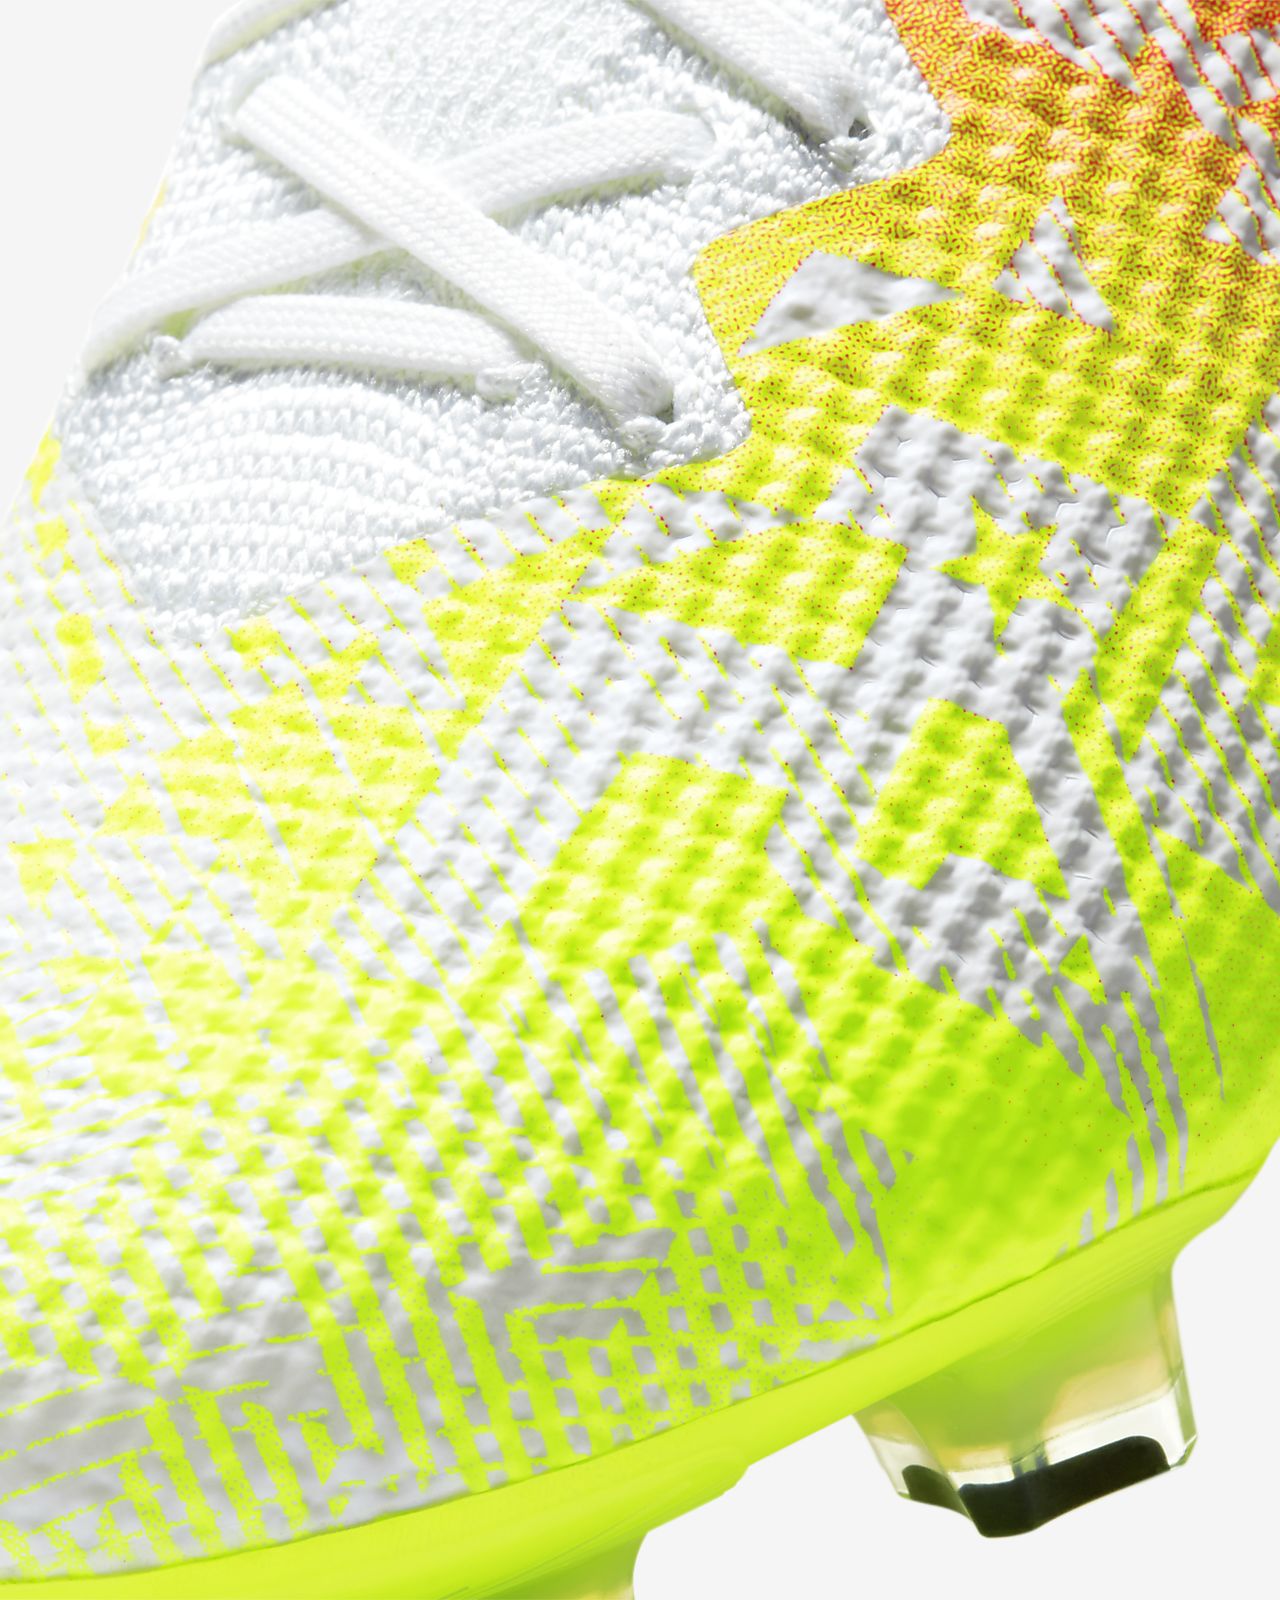 Nike MercurialX Vapor 12 Pro Neymar Jr. Indoor Soccer Shoes